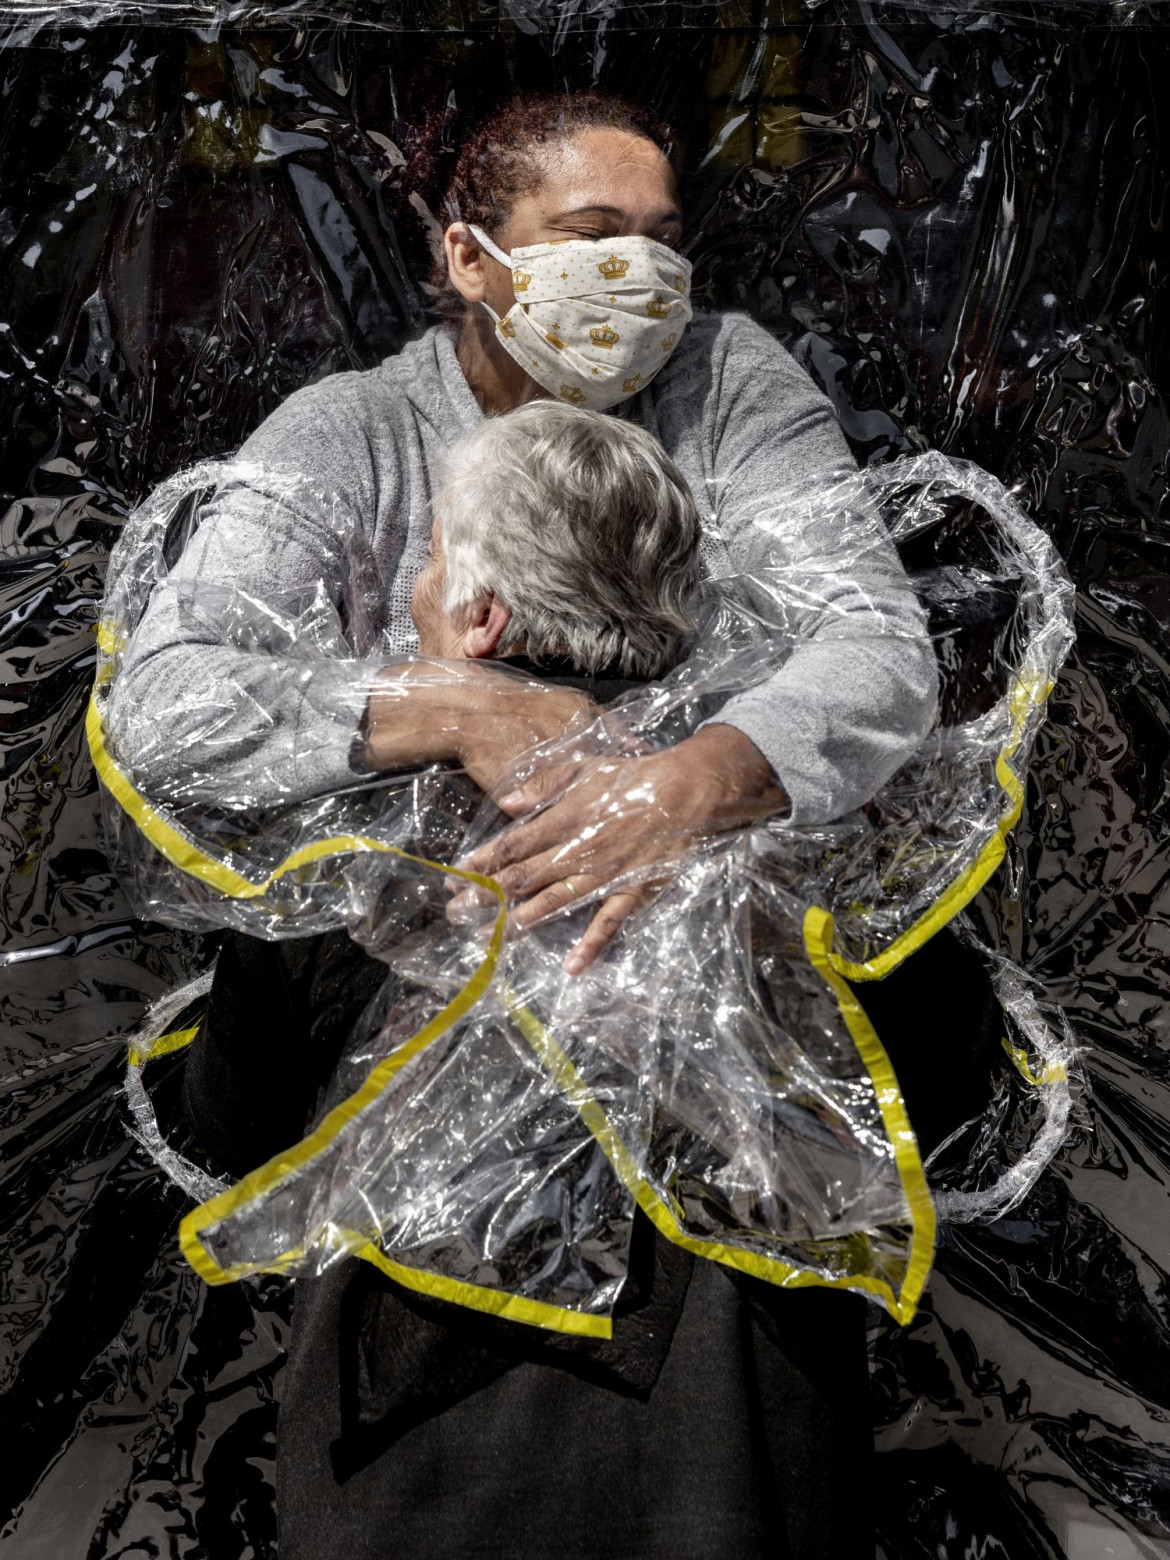 fot. Mads Nissen, Dania, "The First Embrace", nominacja w kategorii General News - zdjęcie pojedyncze / World Press Photo 2021<br></br><br></br>To był pierwszy uścisk, który Rosa otrzymała od pięciu miesięcy. W marcu domy opieki w całym kraju zamknęły swoje drzwi dla odwiedzających w wyniku pandemii COVID-19, uniemożliwiając milionom Brazylijczyków zobaczenie swoich krewnych. Opiekunom nakazano utrzymywać kontakt fizyczny z osobami postronnymi do absolutnego minimum. W Viva Bem prosty wynalazek „Zasłona uścisku” pozwolił ludziom ponownie się przytulić.<br></br><br></br>Nowy koronawirus pojawił się po raz pierwszy w Wuhan w Chinach pod koniec 2019 roku, a od stycznia 2020 roku zaczął rozprzestrzeniać się na całym świecie. 11 marca Światowa Organizacja Zdrowia ogłosiła wybuch COVID-19 pandemią. Choroba - przenoszona głównie przez bliski kontakt, kropelki oddechowe i aerozole - może być śmiertelna, a osoby w wieku powyżej 70 lat są jedną z grup uważanych za najbardziej narażone na infekcję.<br></br><br></br>Prezydent Brazylii Jair Bolsonaro odrzucił twierdzenia o powadze pandemii i niebezpieczeństwie, jakie stwarza wirus, podważał środki kwarantanny przyjęte na szczeblu stanowym i zachęcał Brazylijczyków do dalszych działań na rzecz utrzymania gospodarki. Brazylia zakończyła rok 2020 jednym z najgorszych na świecie rekordów w walce z wirusem, z około 7,7 miliona zgłoszonych przypadków i 195000 zgonów.